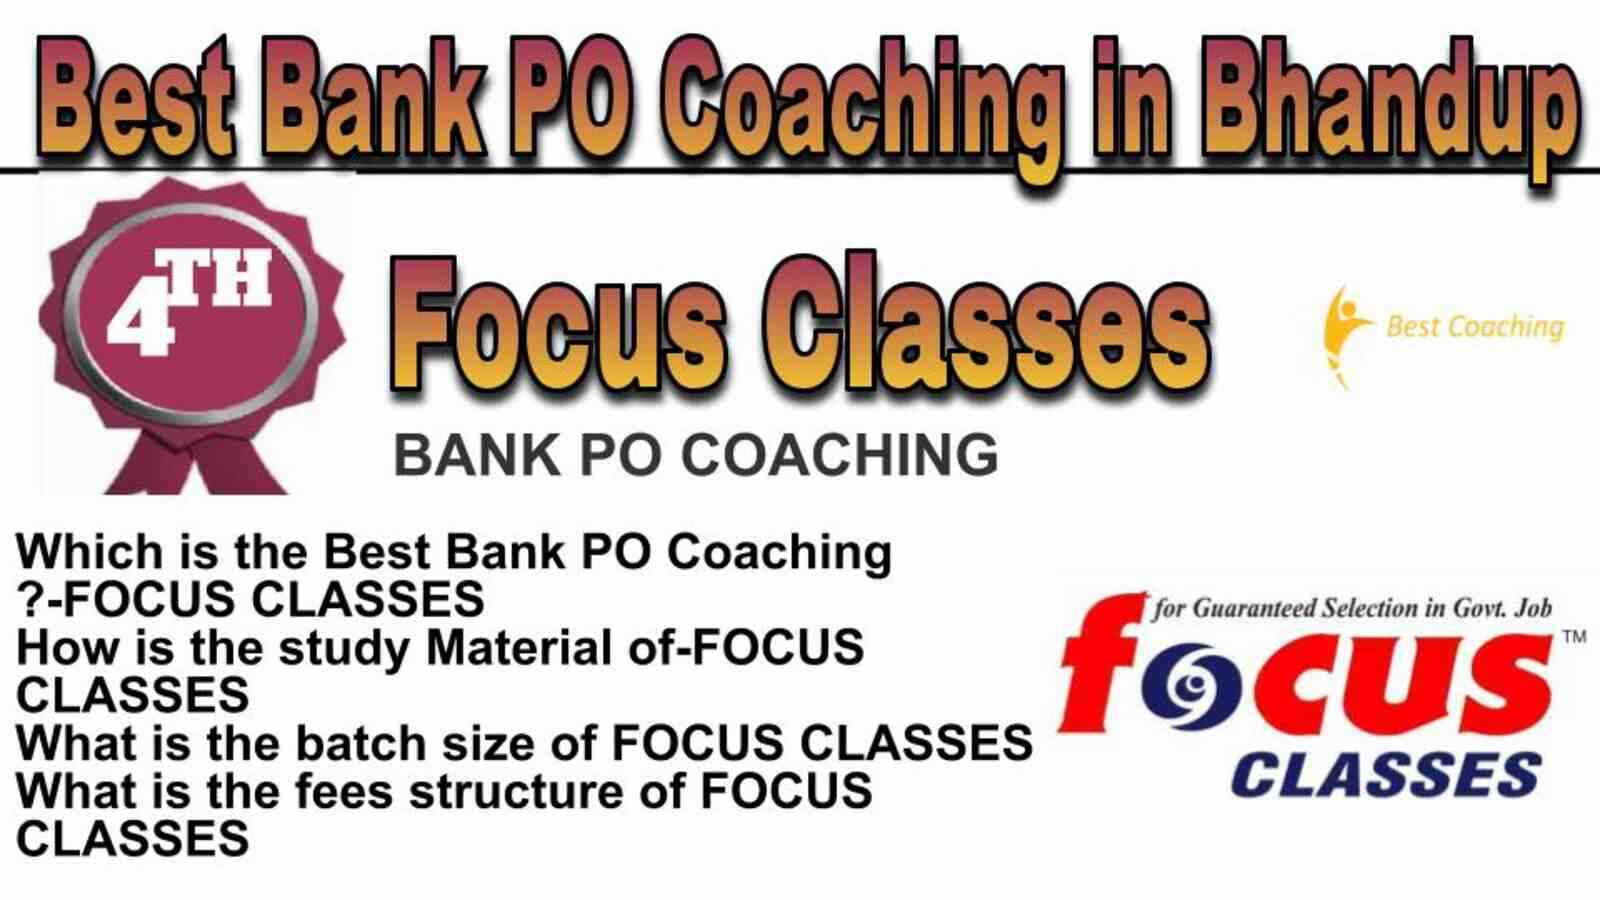 Rank 4 Top Bank PO Coaching in Bhandup